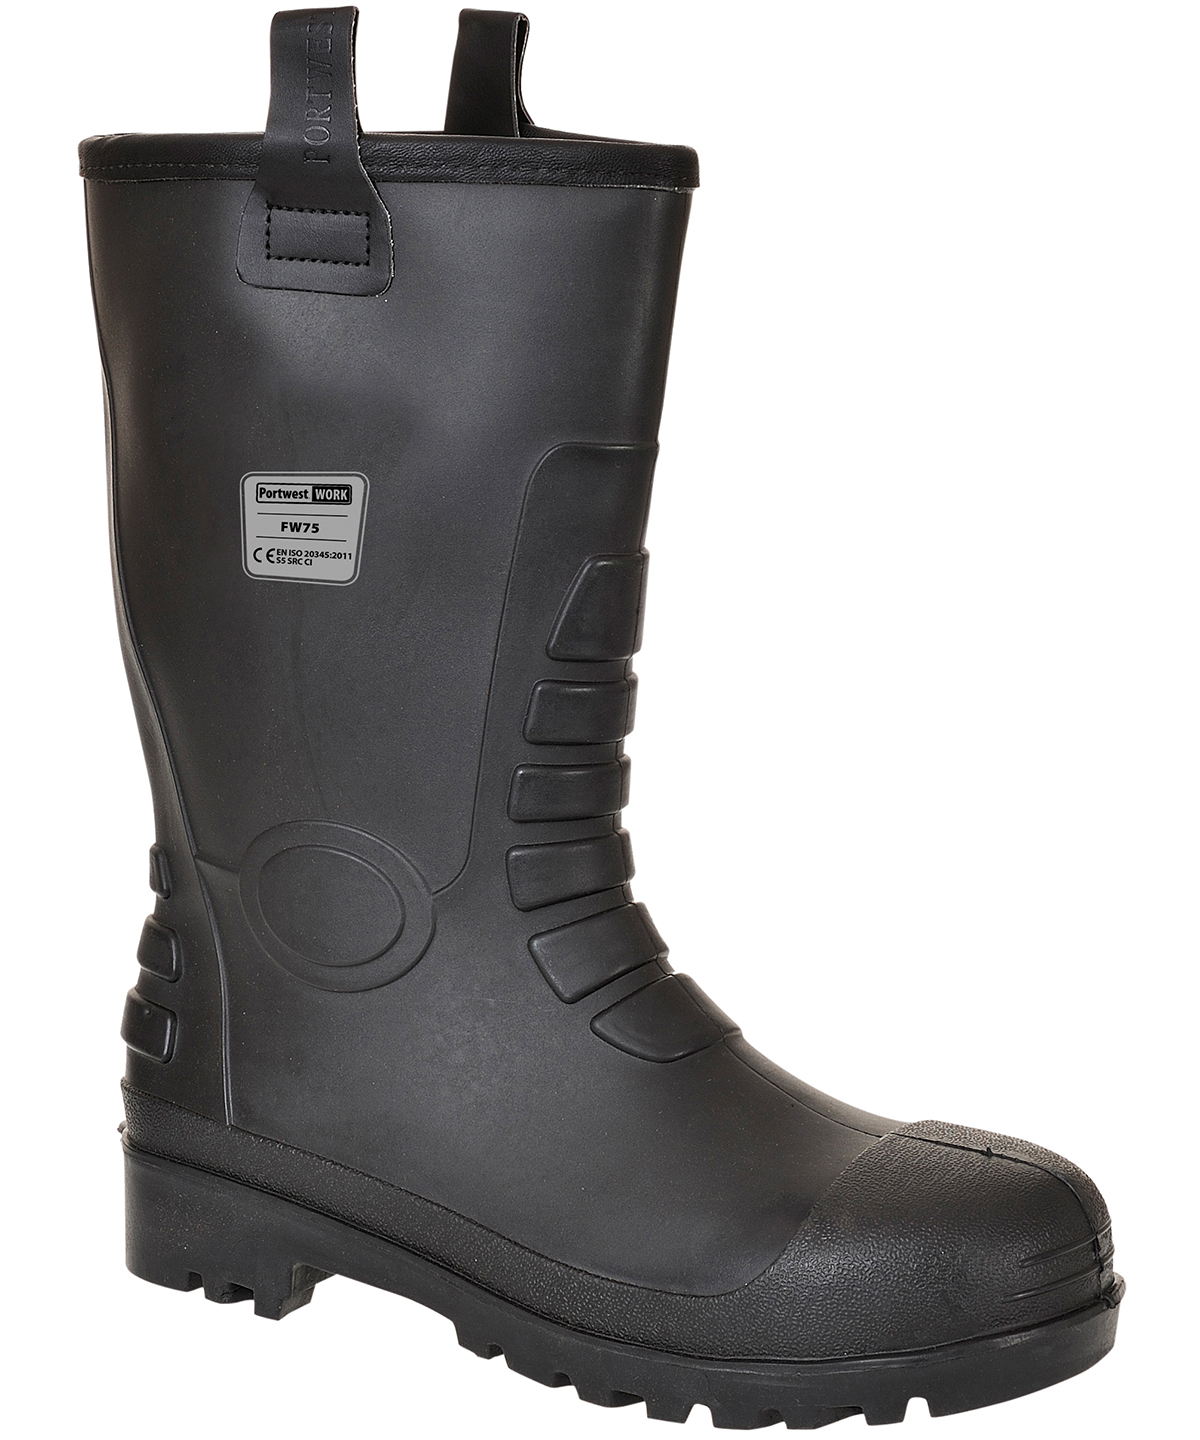 Steelite™ Neptune Rigger Boot S5 Ci (Fw75) Black Size 11